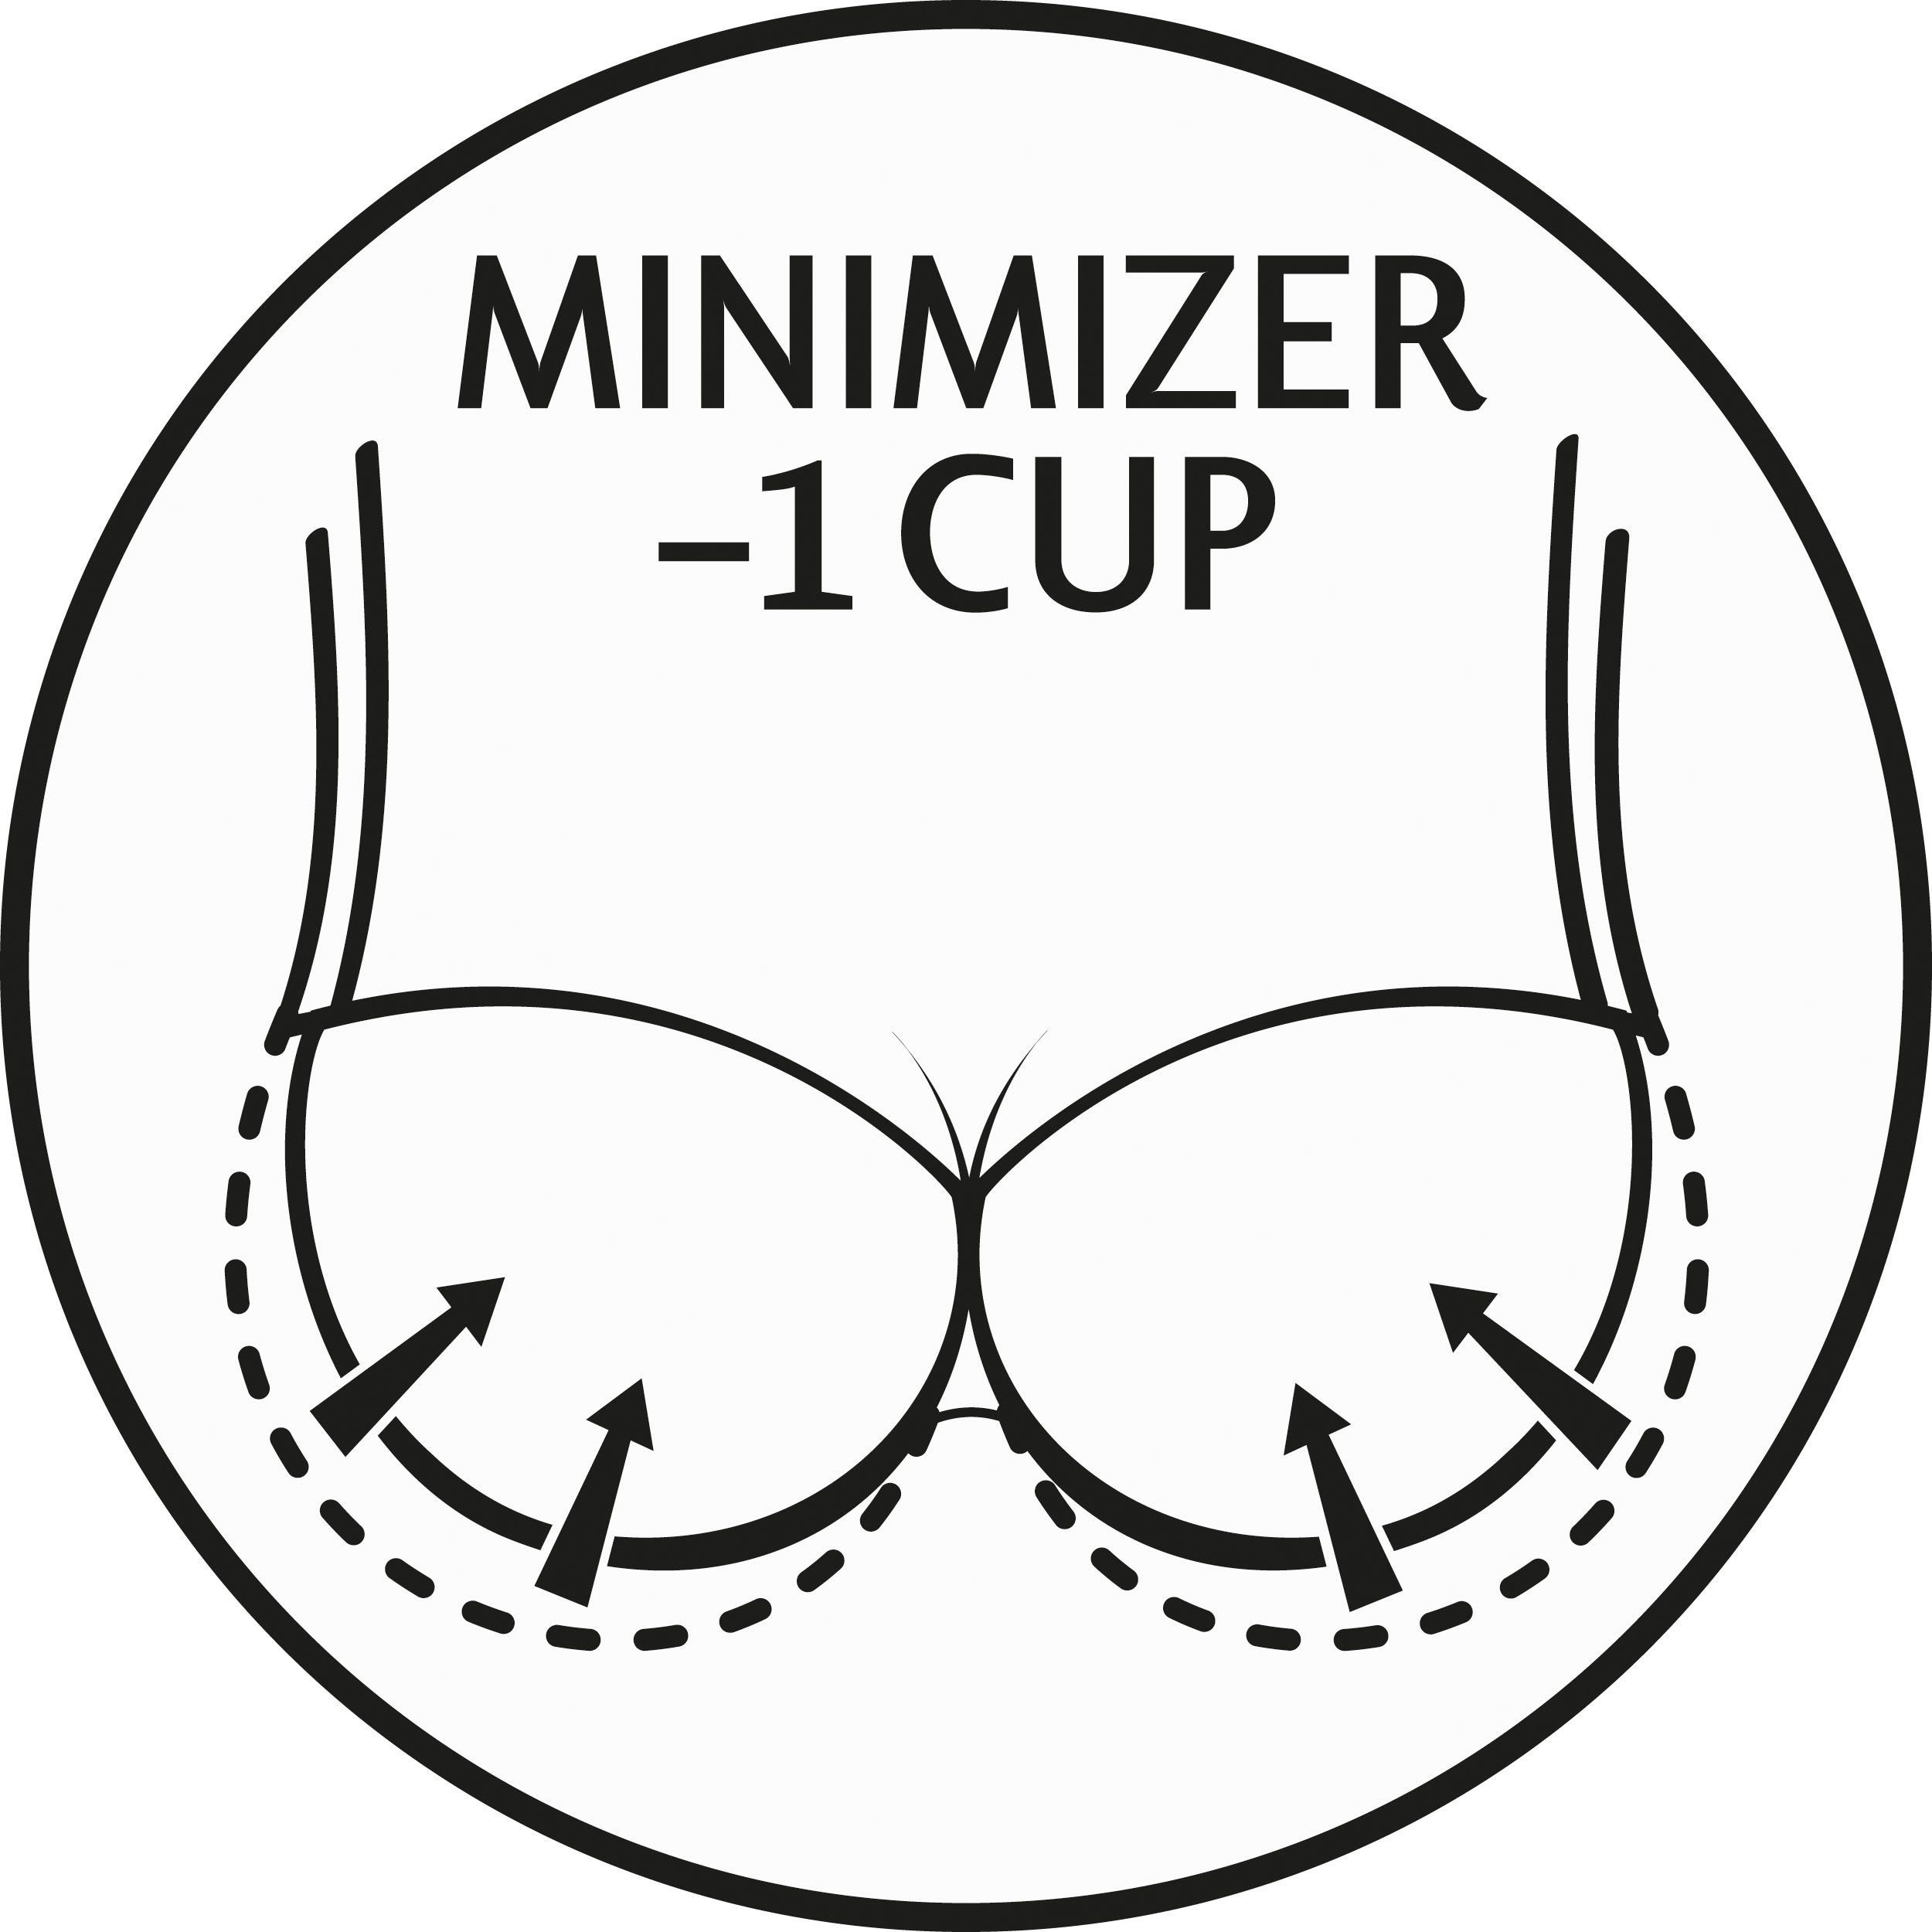 Triumph Minimizer-bh Amourette 300 W01 Cup C-G verminderd visueel met één cupmaat satijnen roos op de rondingen